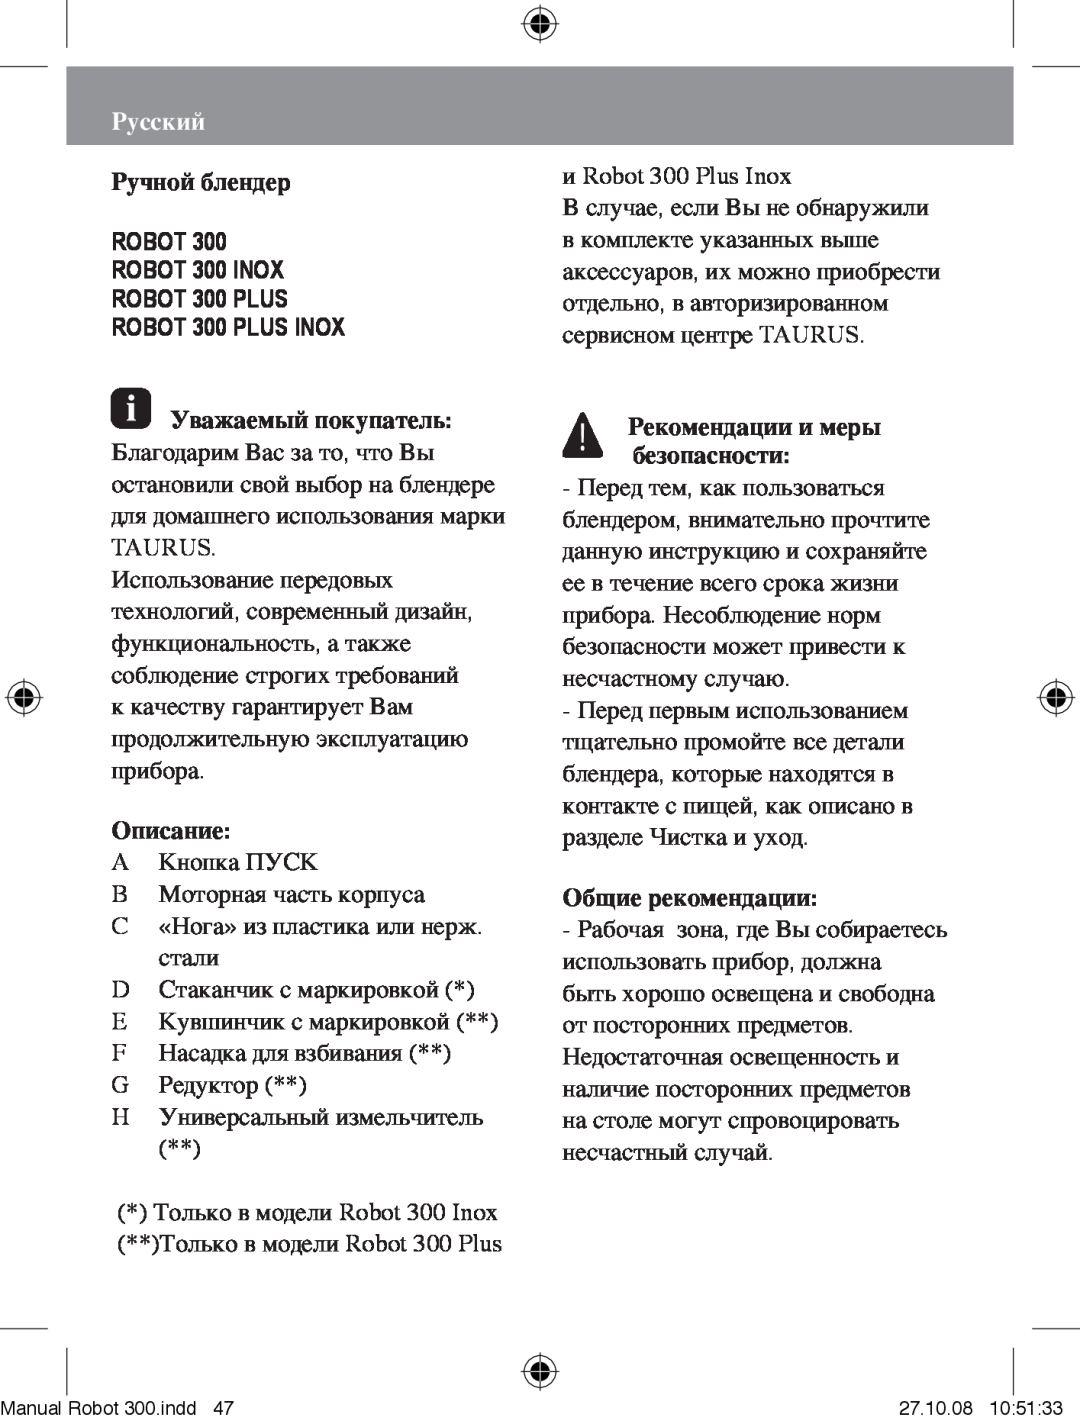 Taurus Group Robot 300 Plus manual Русский, Ручной блендер, Описание, Рекомендации и меры безопасности, Общие рекомендации 